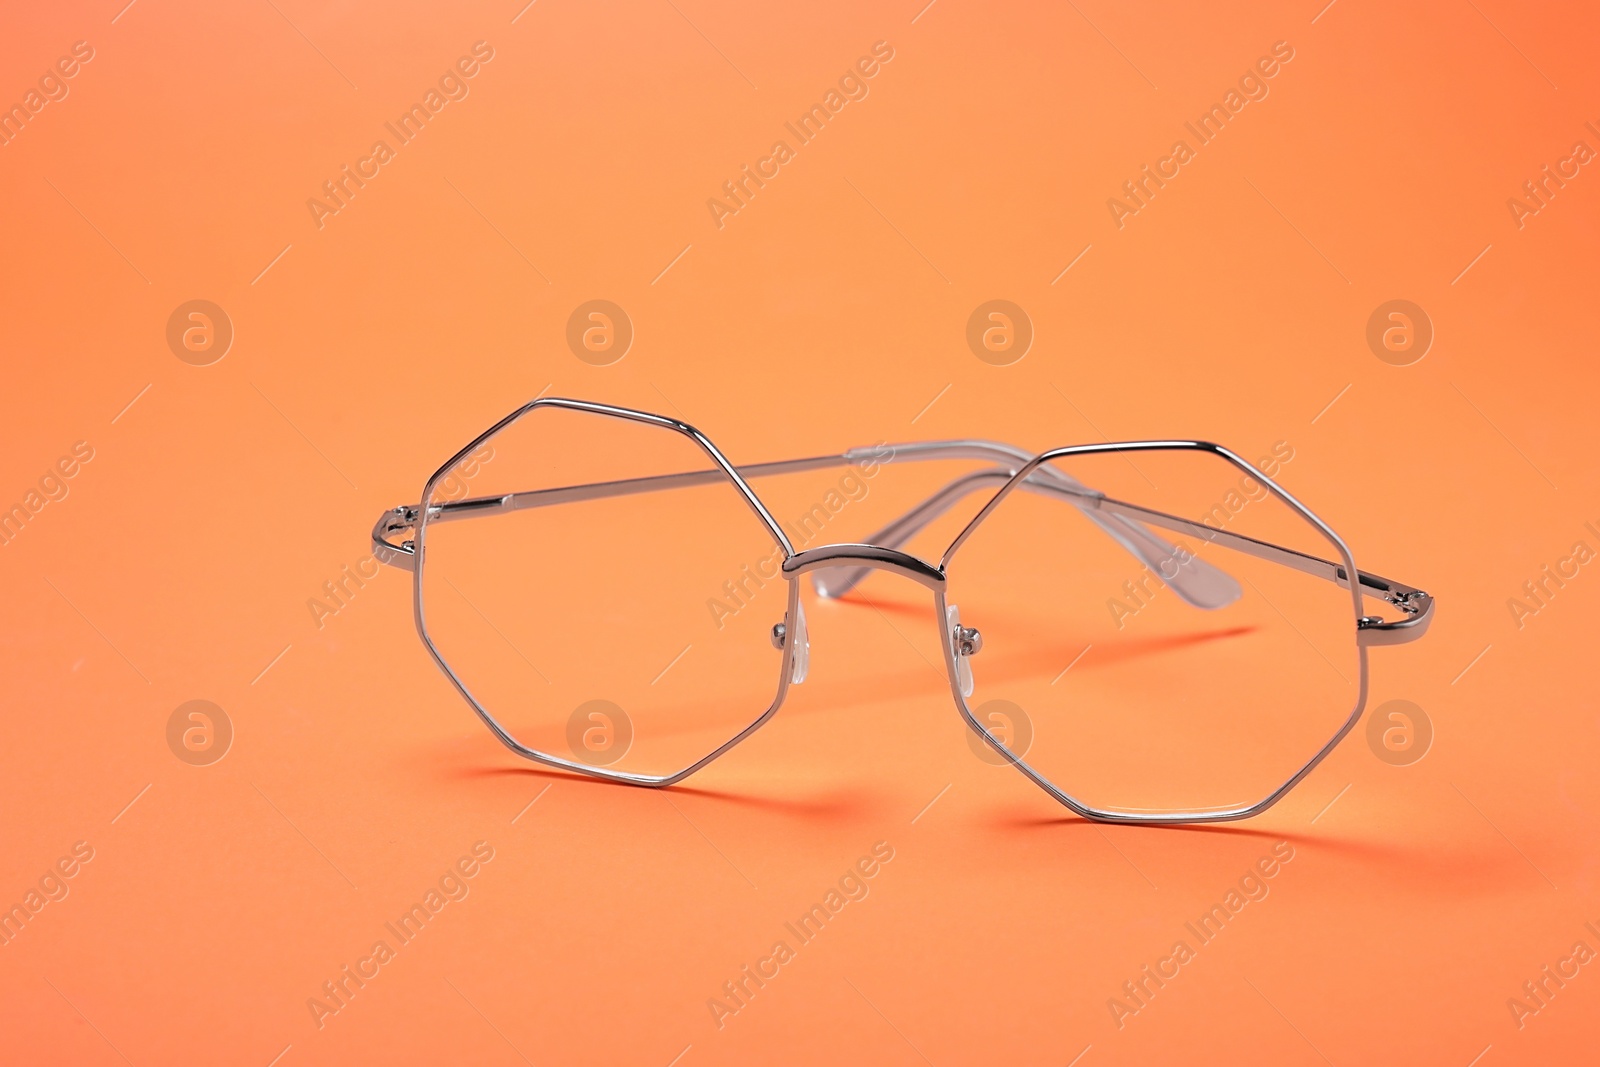 Photo of Glasses in stylish frame on orange background